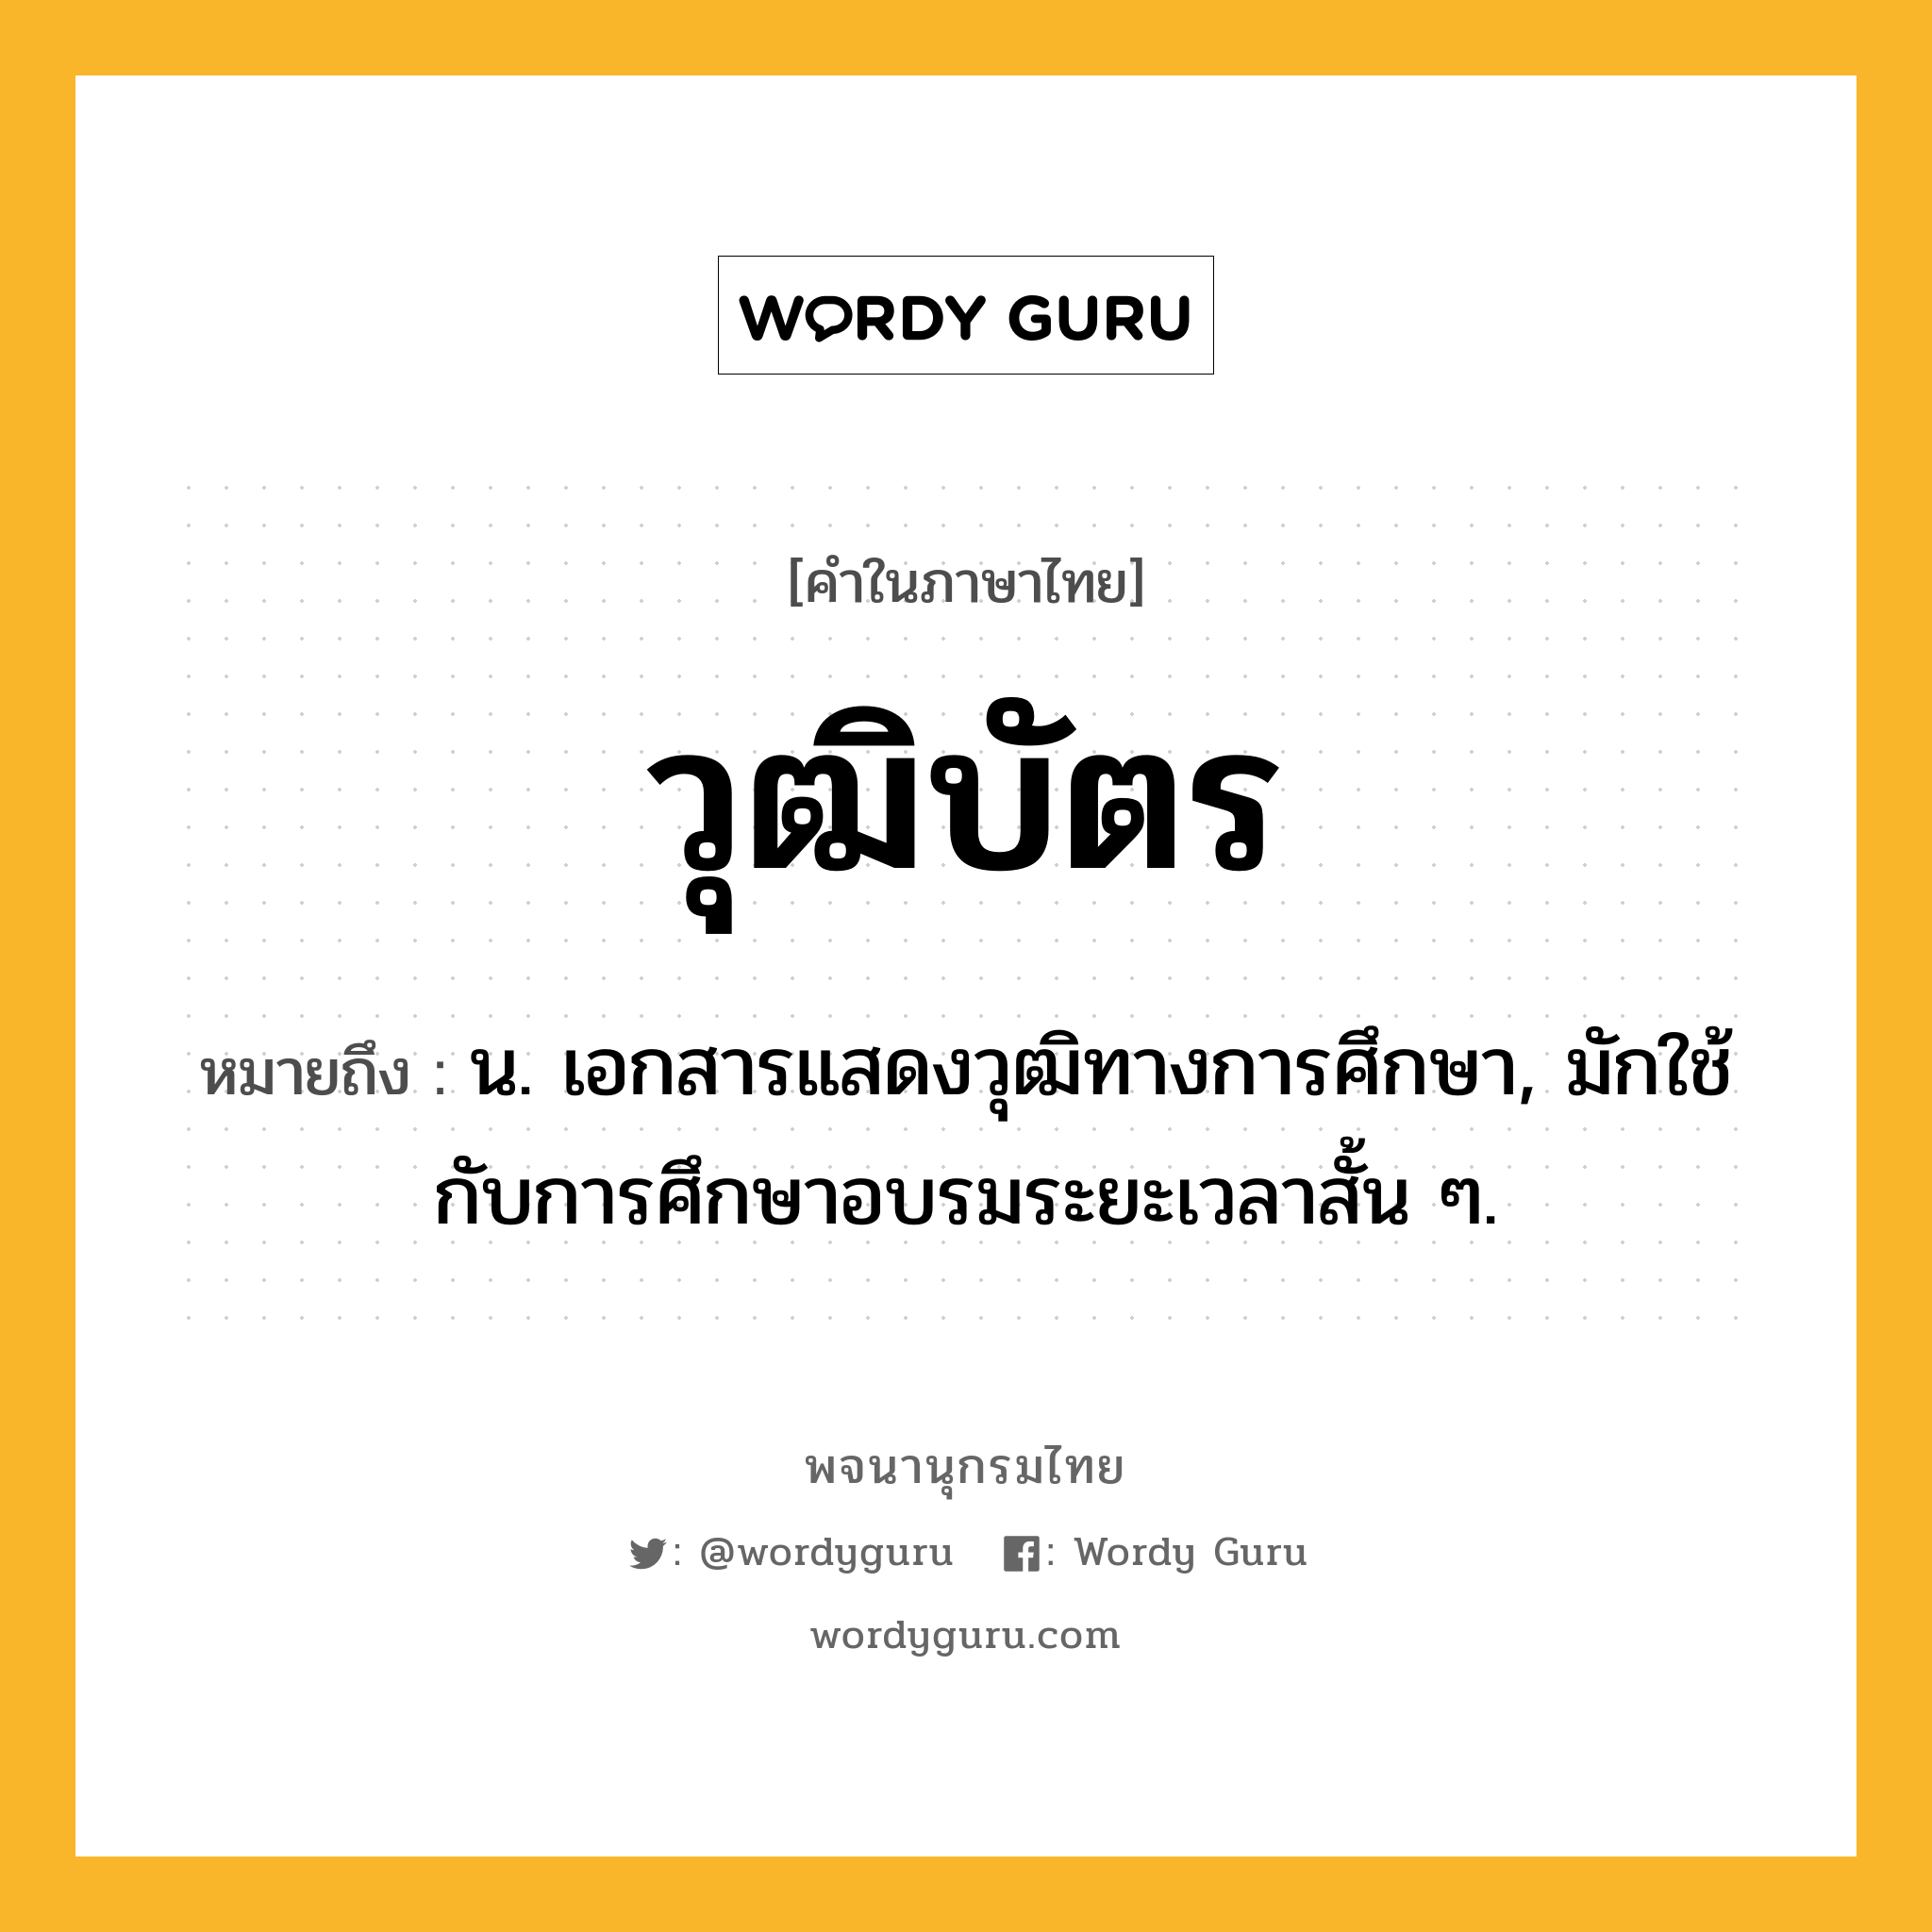 วุฒิบัตร ความหมาย หมายถึงอะไร?, คำในภาษาไทย วุฒิบัตร หมายถึง น. เอกสารแสดงวุฒิทางการศึกษา, มักใช้กับการศึกษาอบรมระยะเวลาสั้น ๆ.